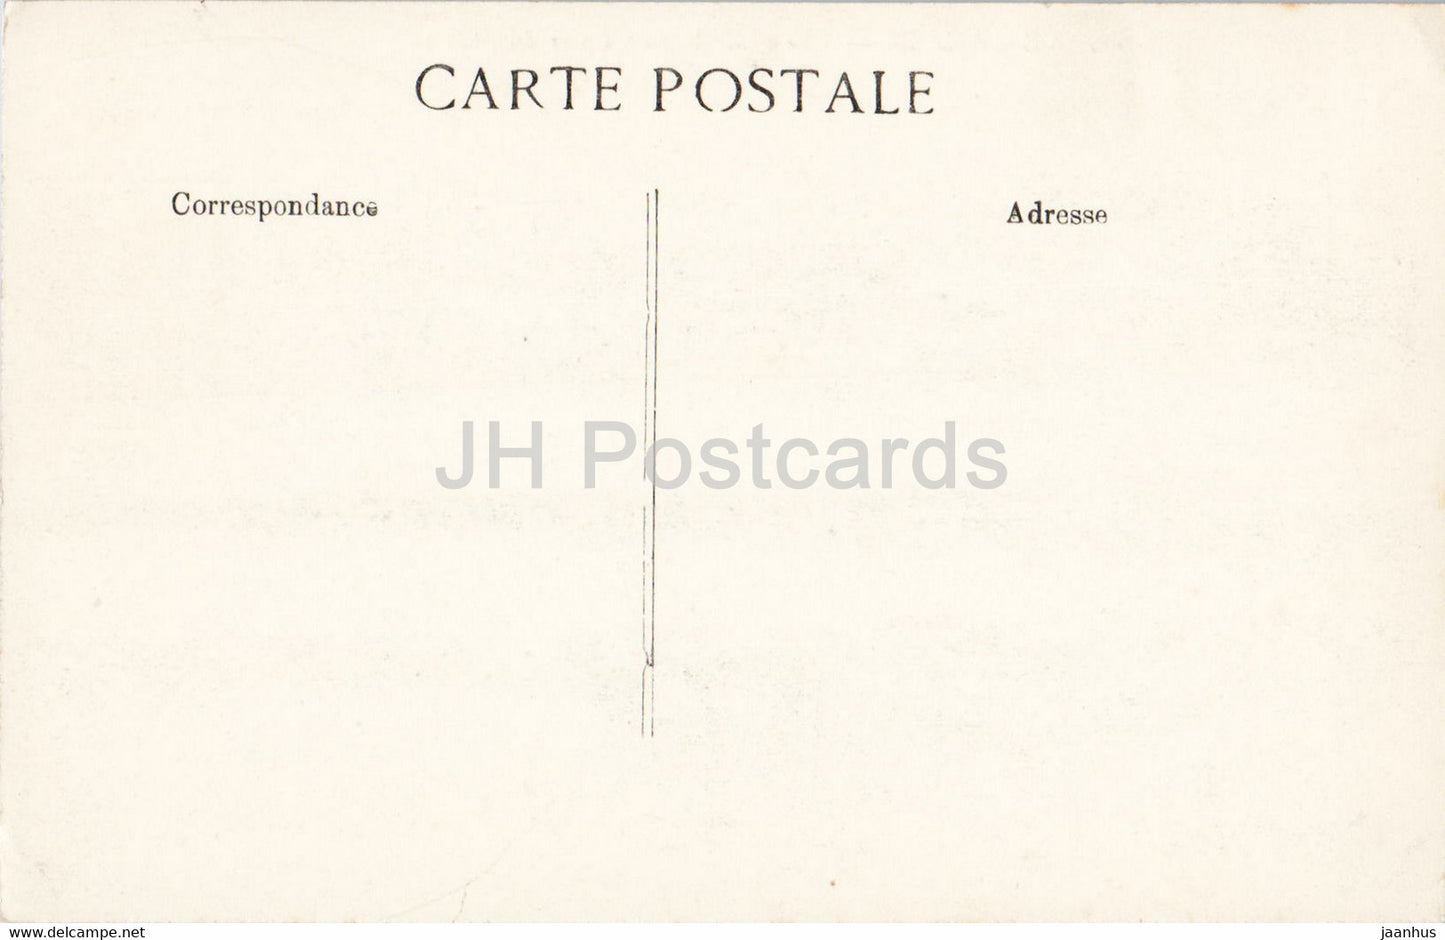 Versailles - Vue Generale du Parc et du Chateau - 16 - illustration - old postcard - France - unused